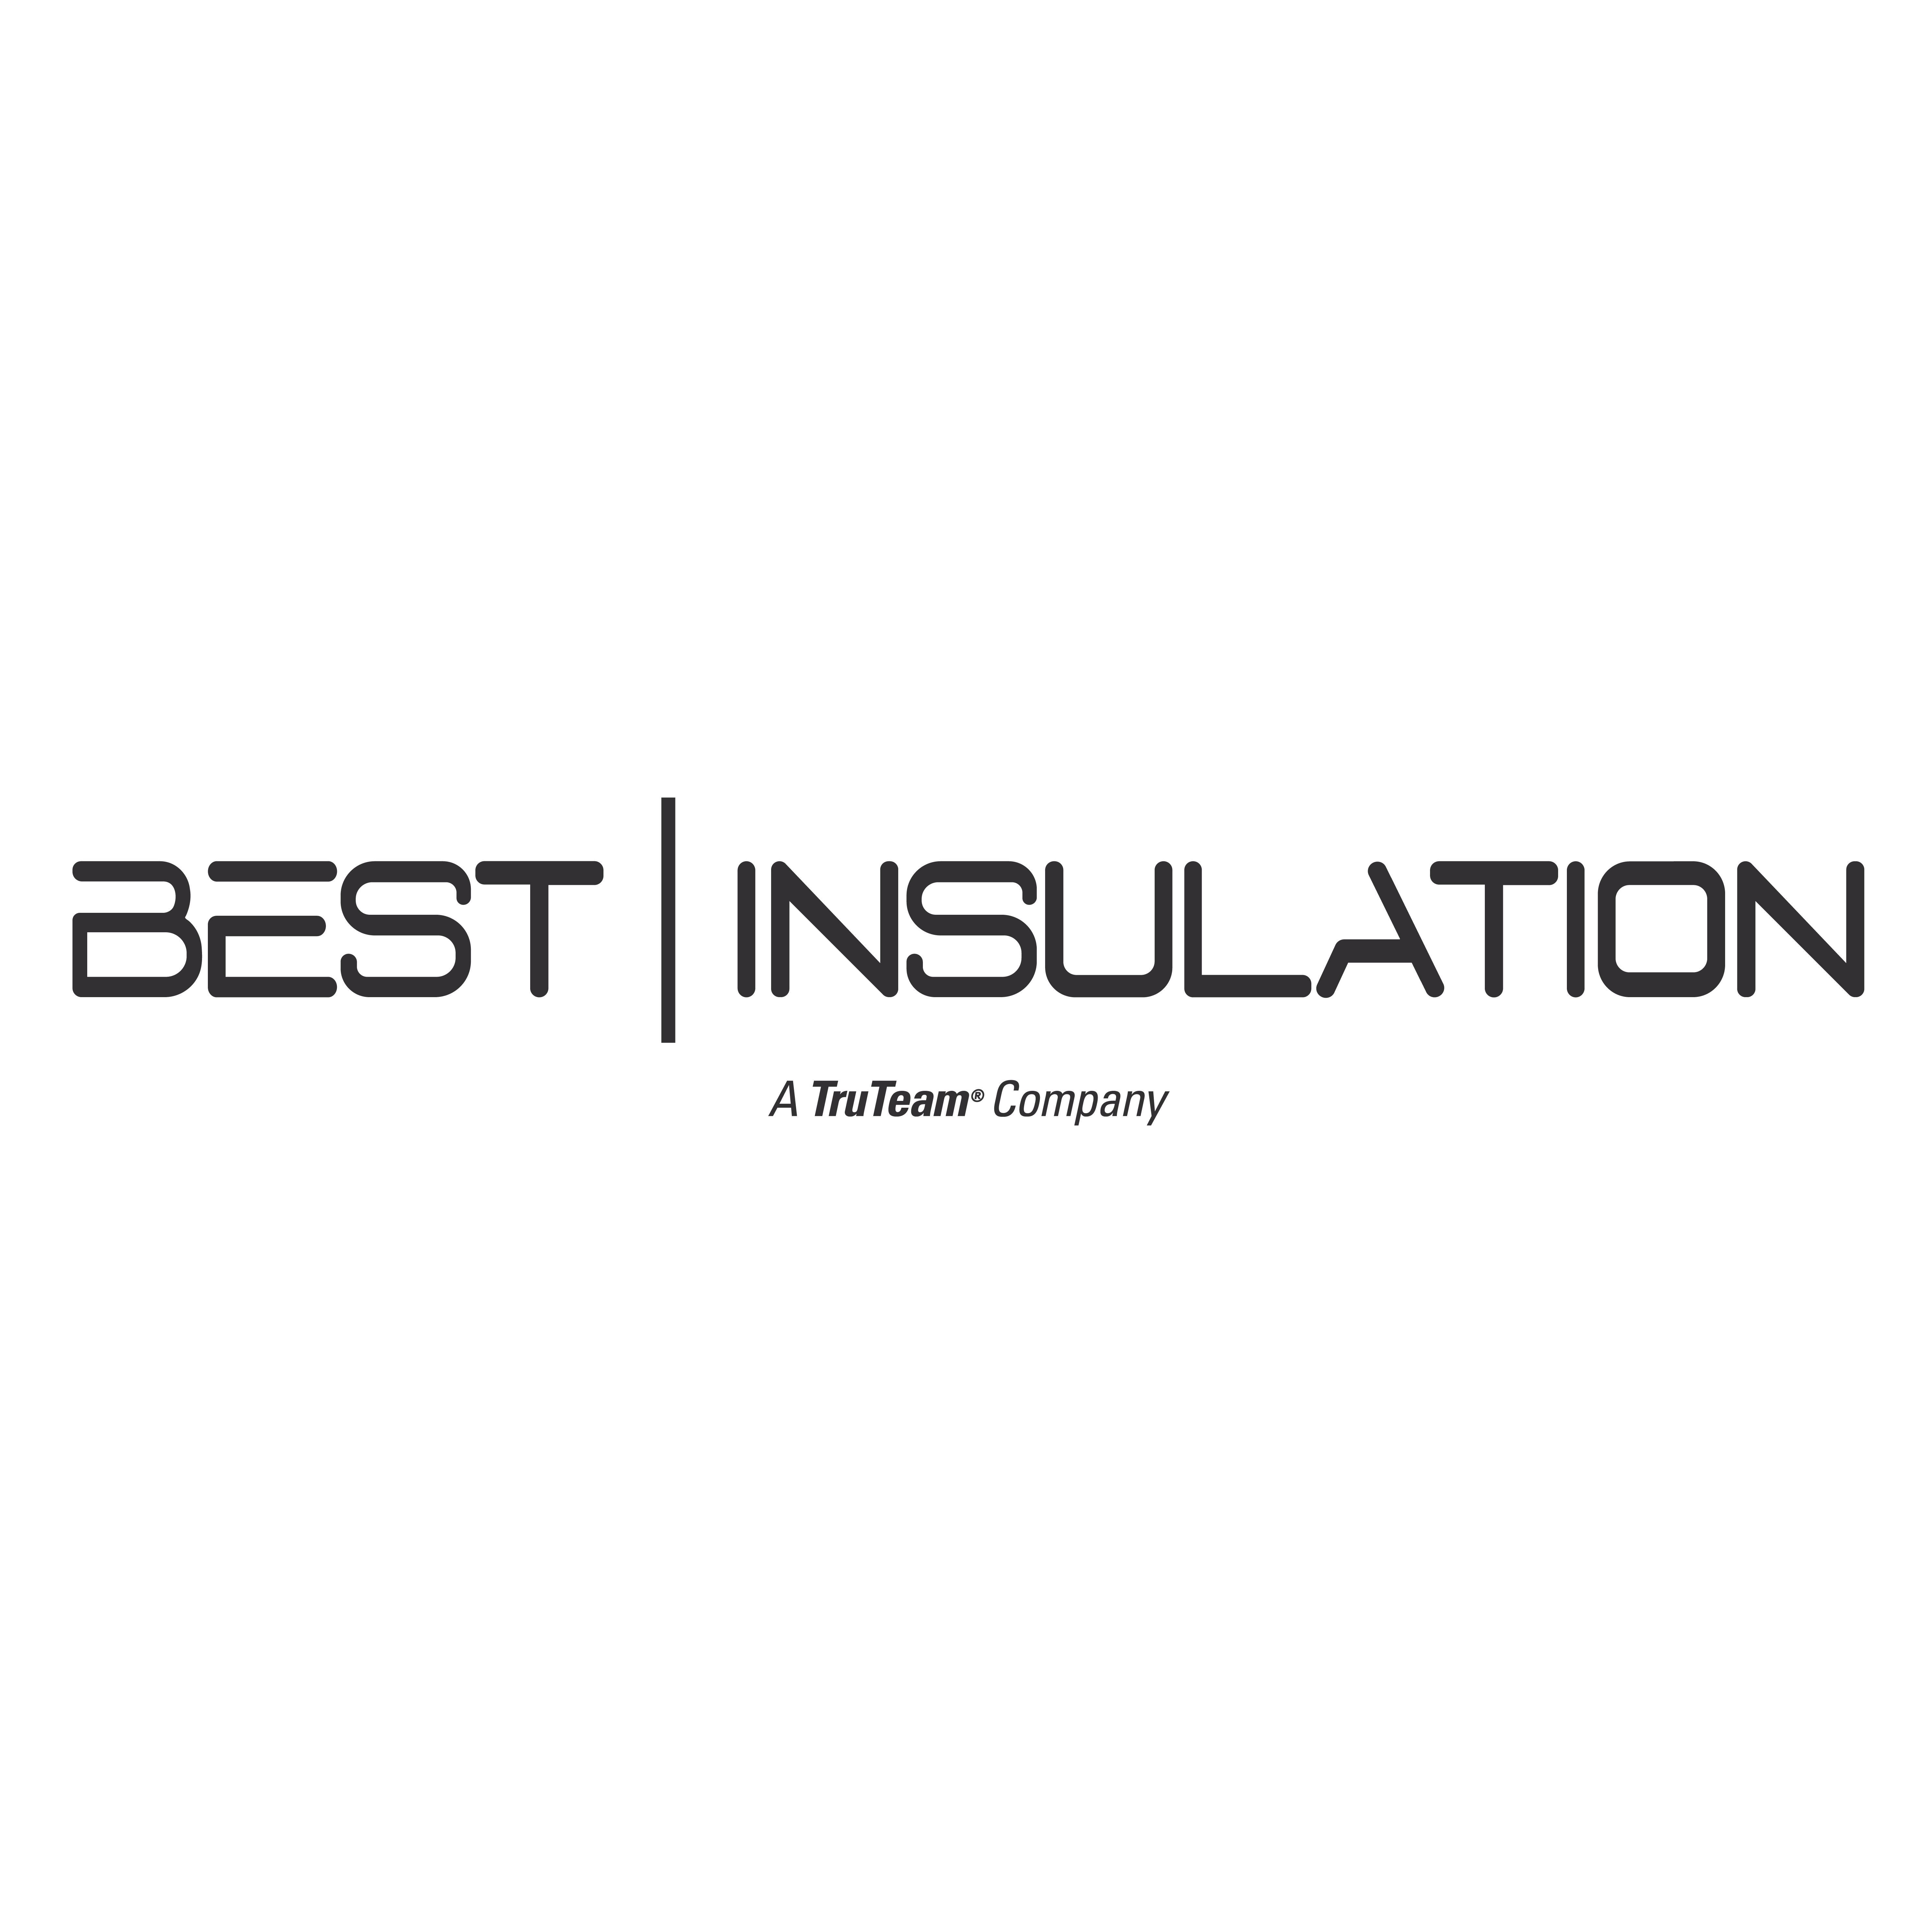 Best Insulation